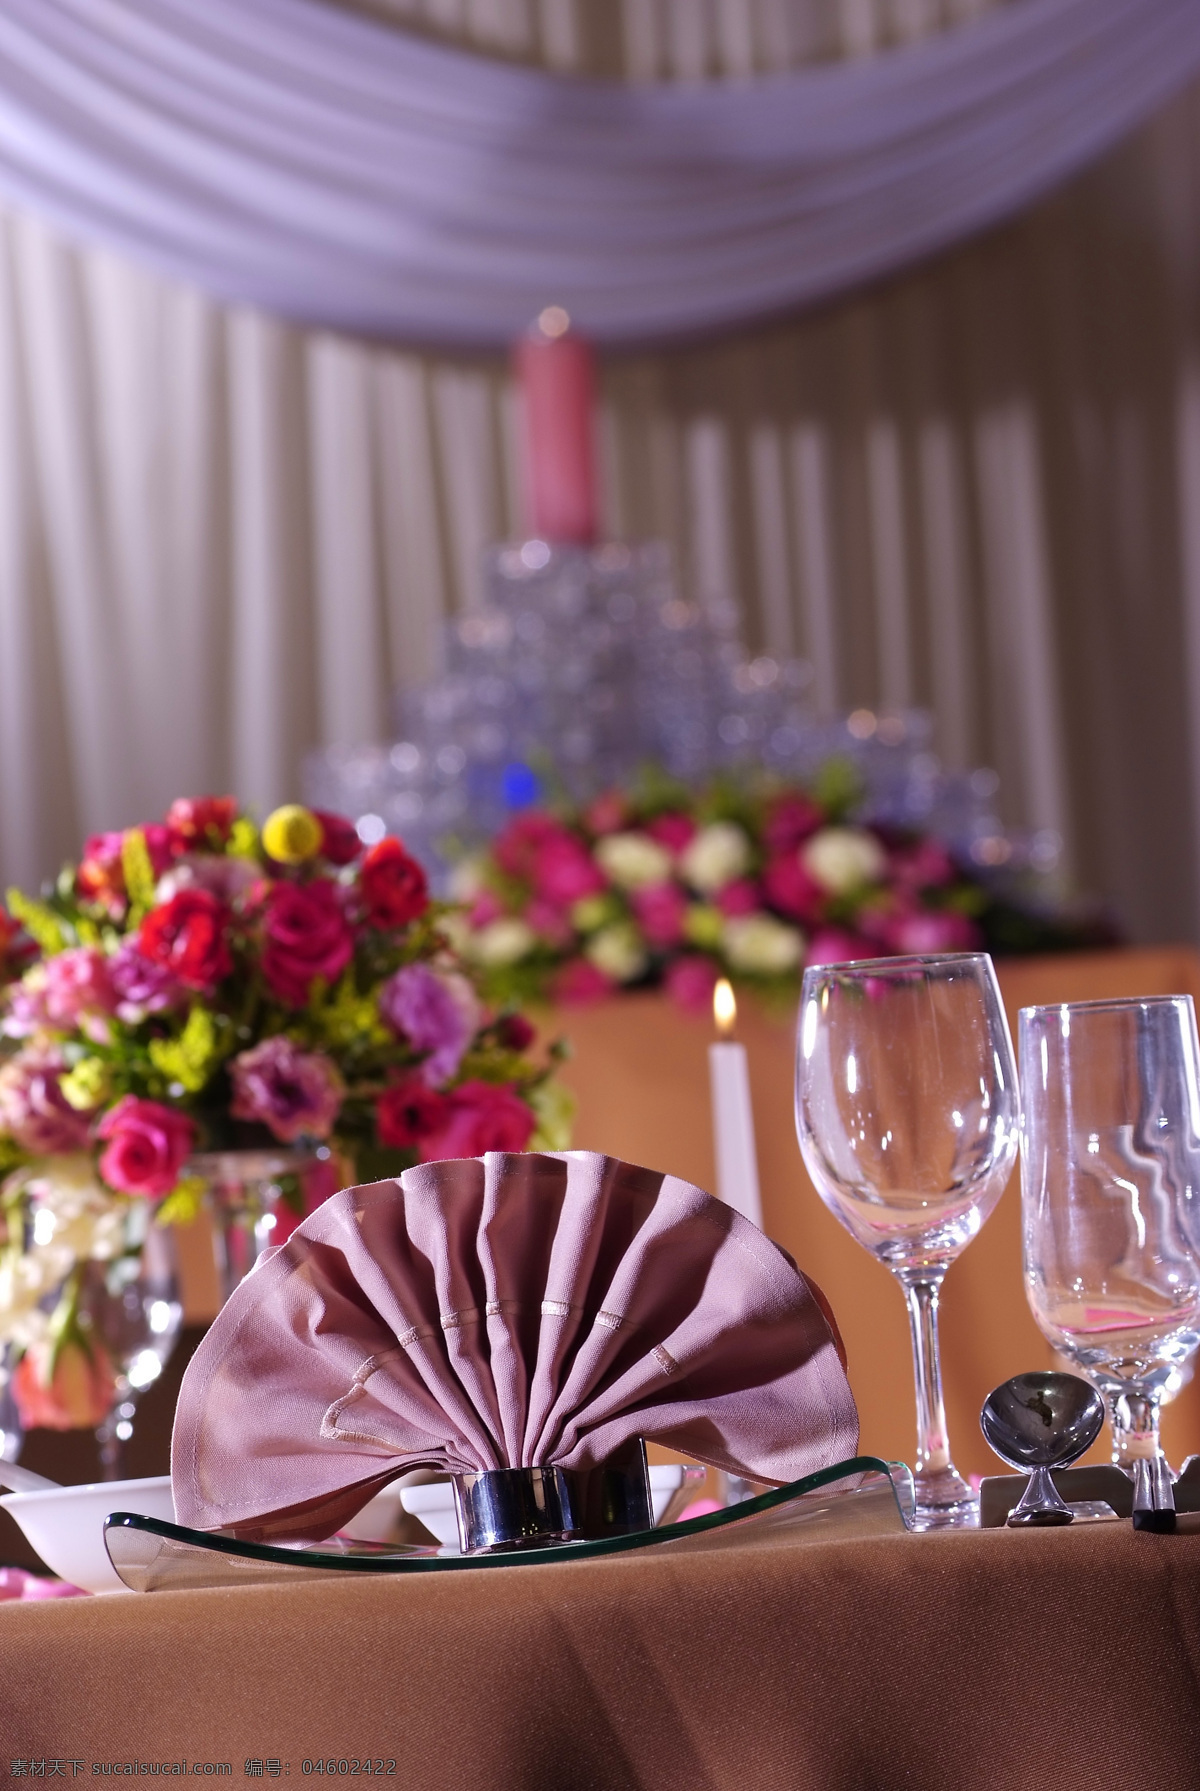 桌面布置 酒店摄影 酒杯 婚庆布置 餐巾 文化艺术 摄影图库